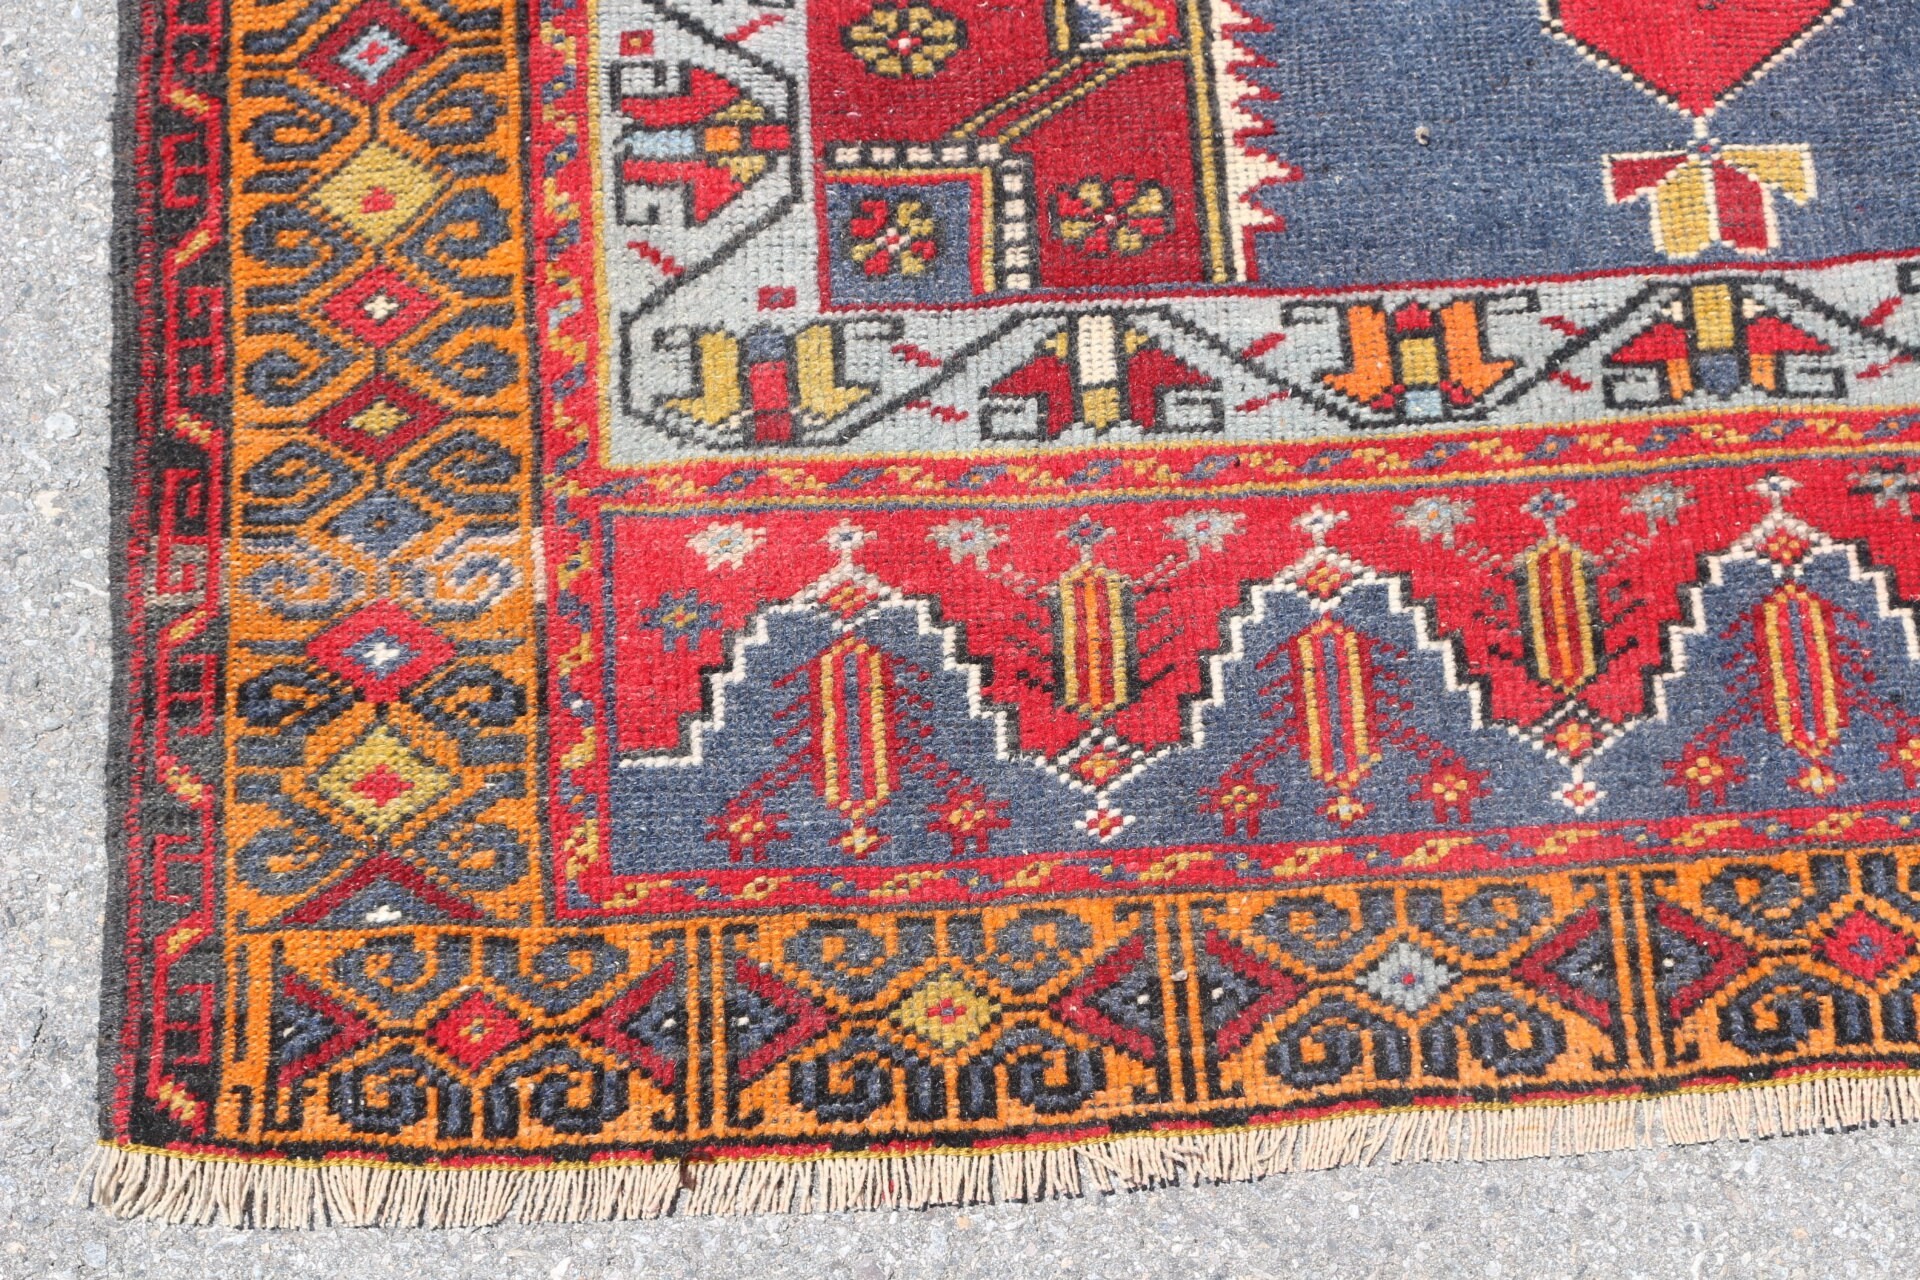 Red Cool Rug, Vintage Rug, Oriental Rugs, Bedroom Rug, 4.8x9.3 ft Large Rug, Large Wool Rug Rugs, Dining Room Rugs, Wool Rug, Turkish Rugs